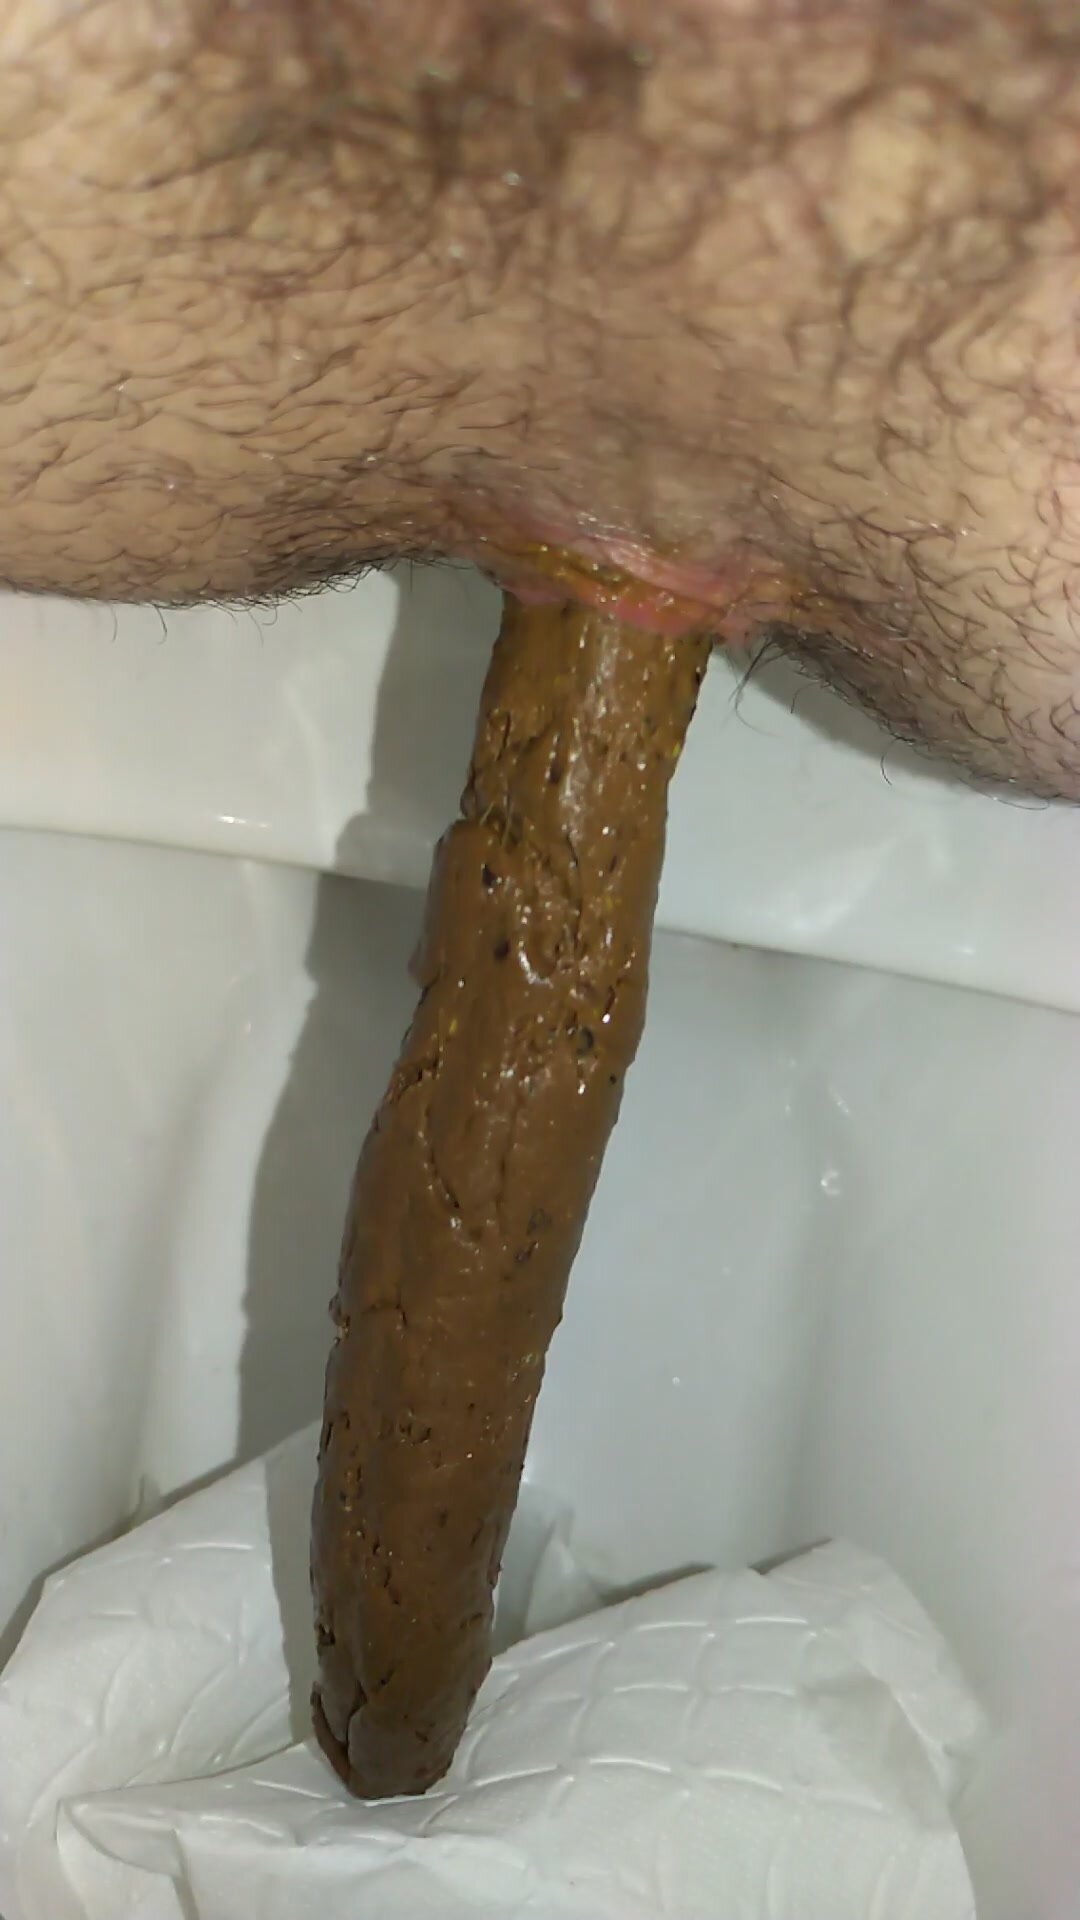 Me pooping on toilet - video 2